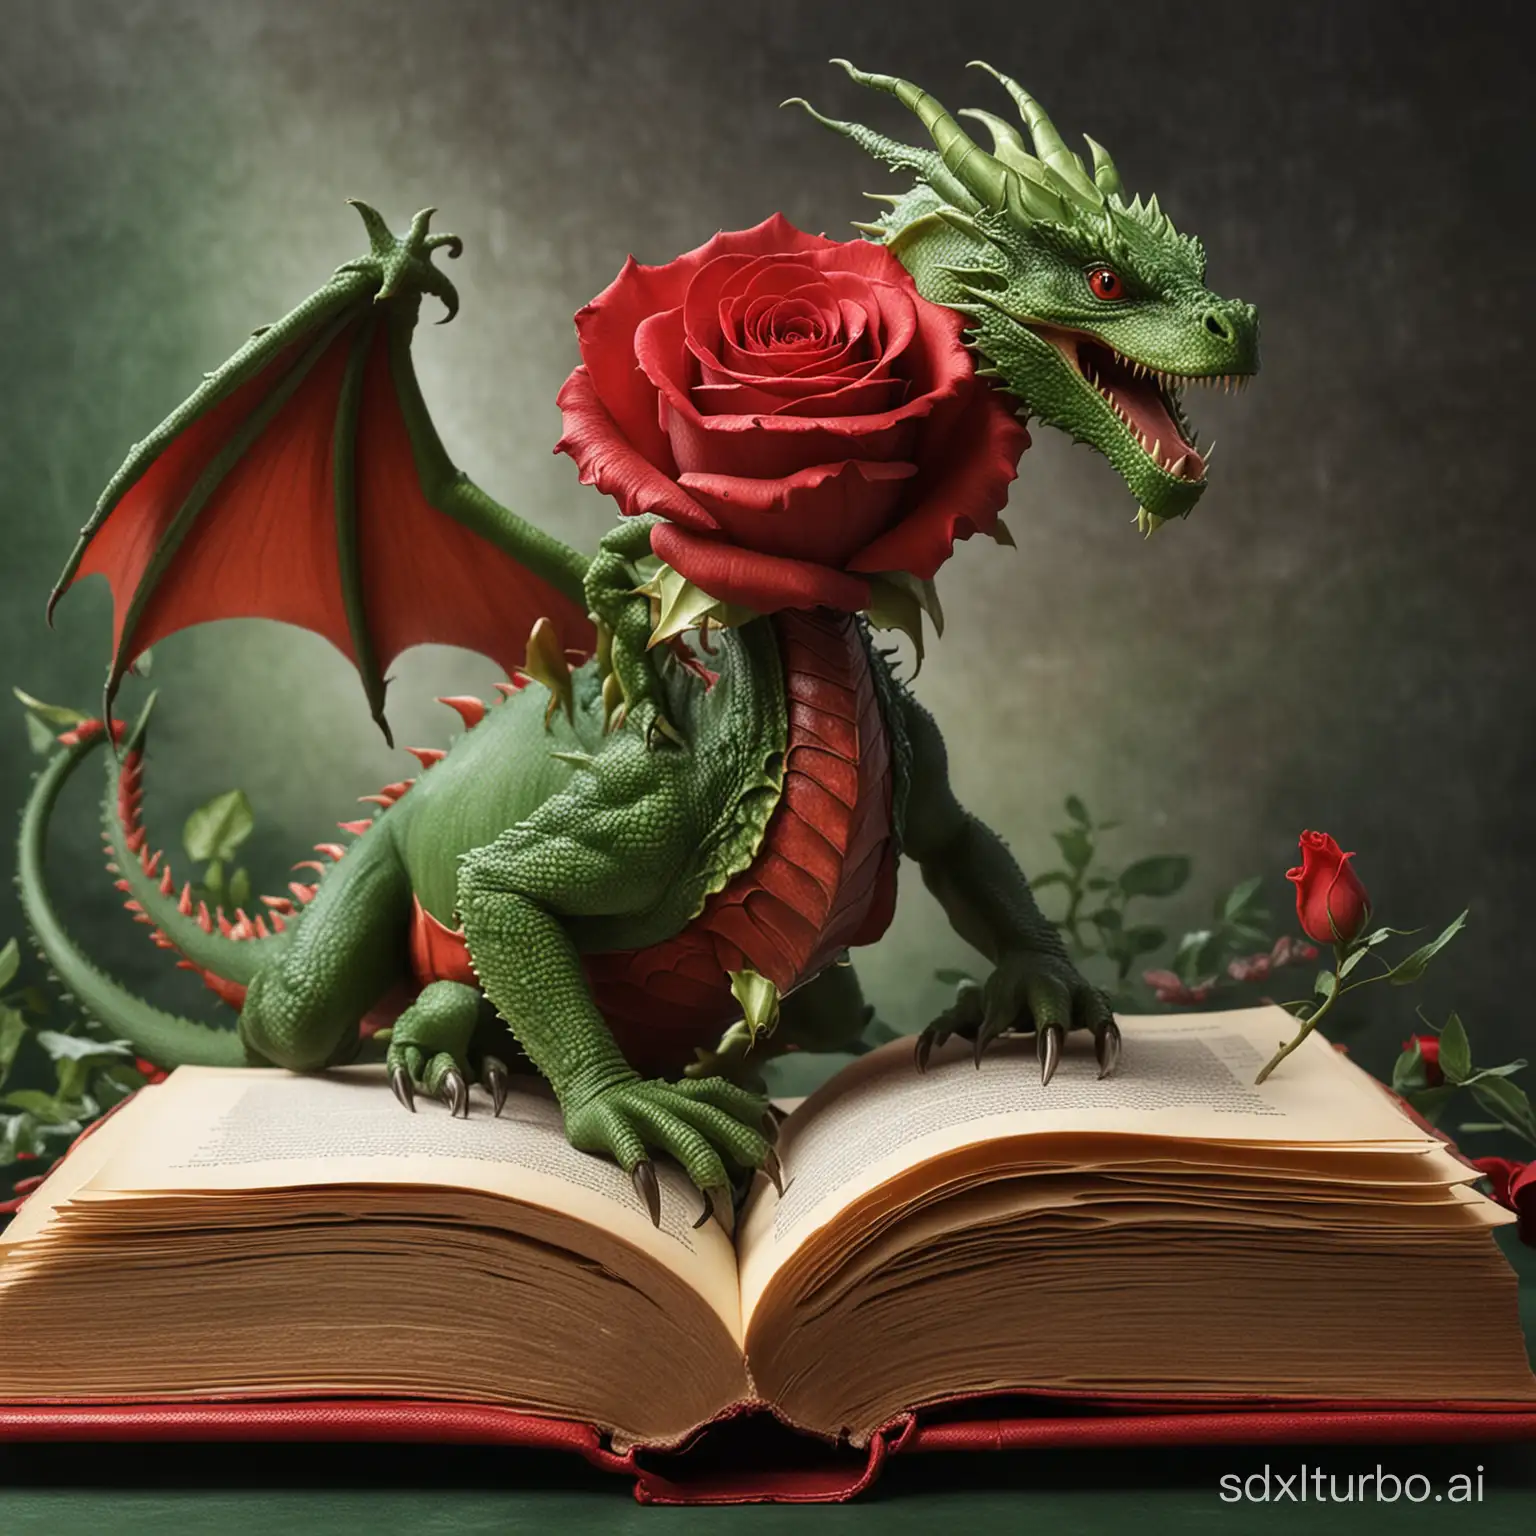 el nacimiento de un libro dentro de una rosa roja junto a un dragon verde de mirada cariñosa